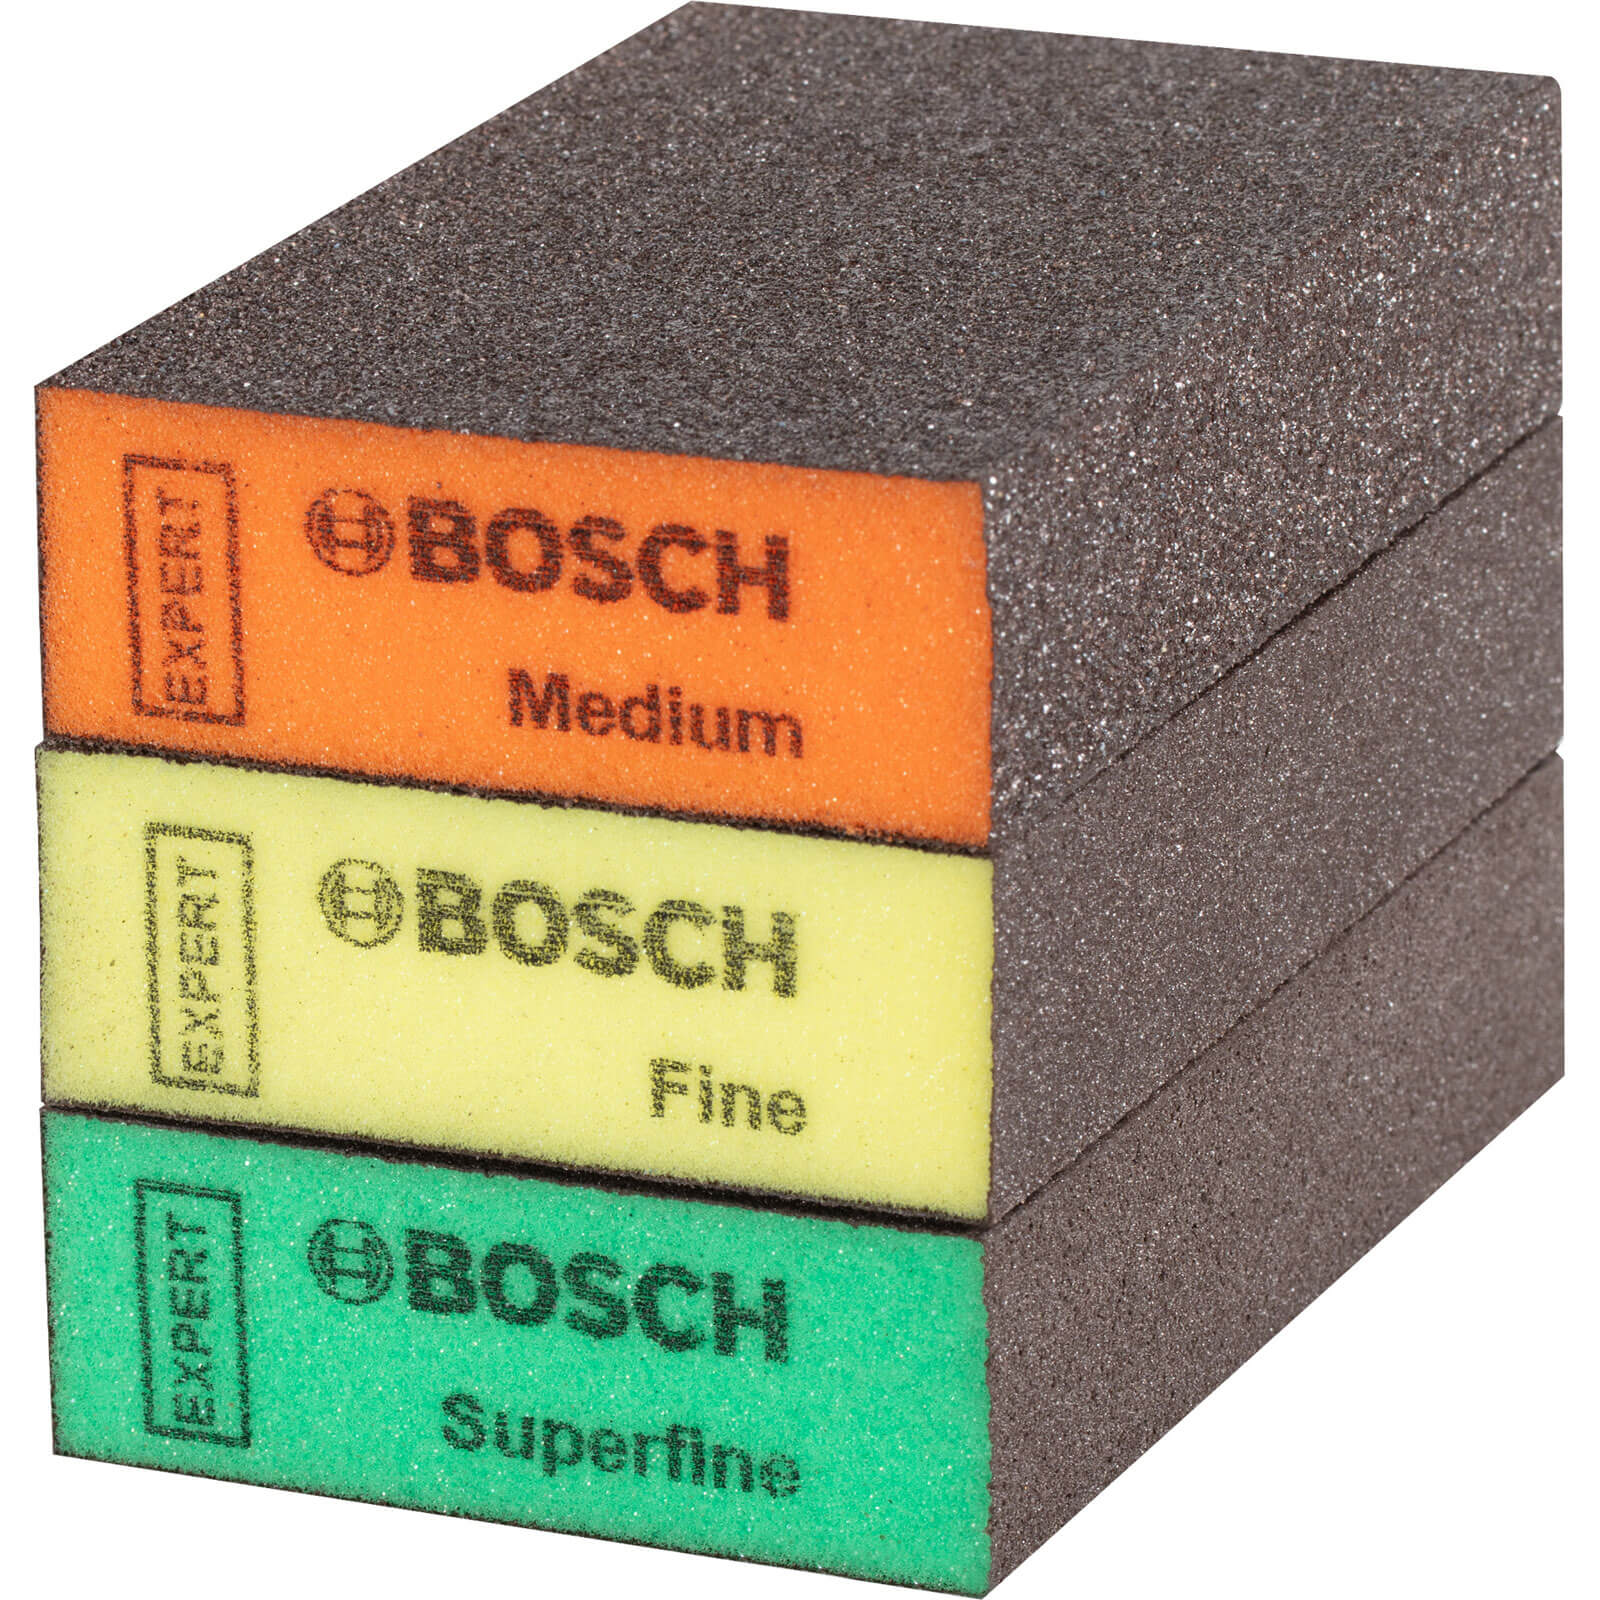 Photo of Bosch Expert 3 Piece S471 Sanding Block Set